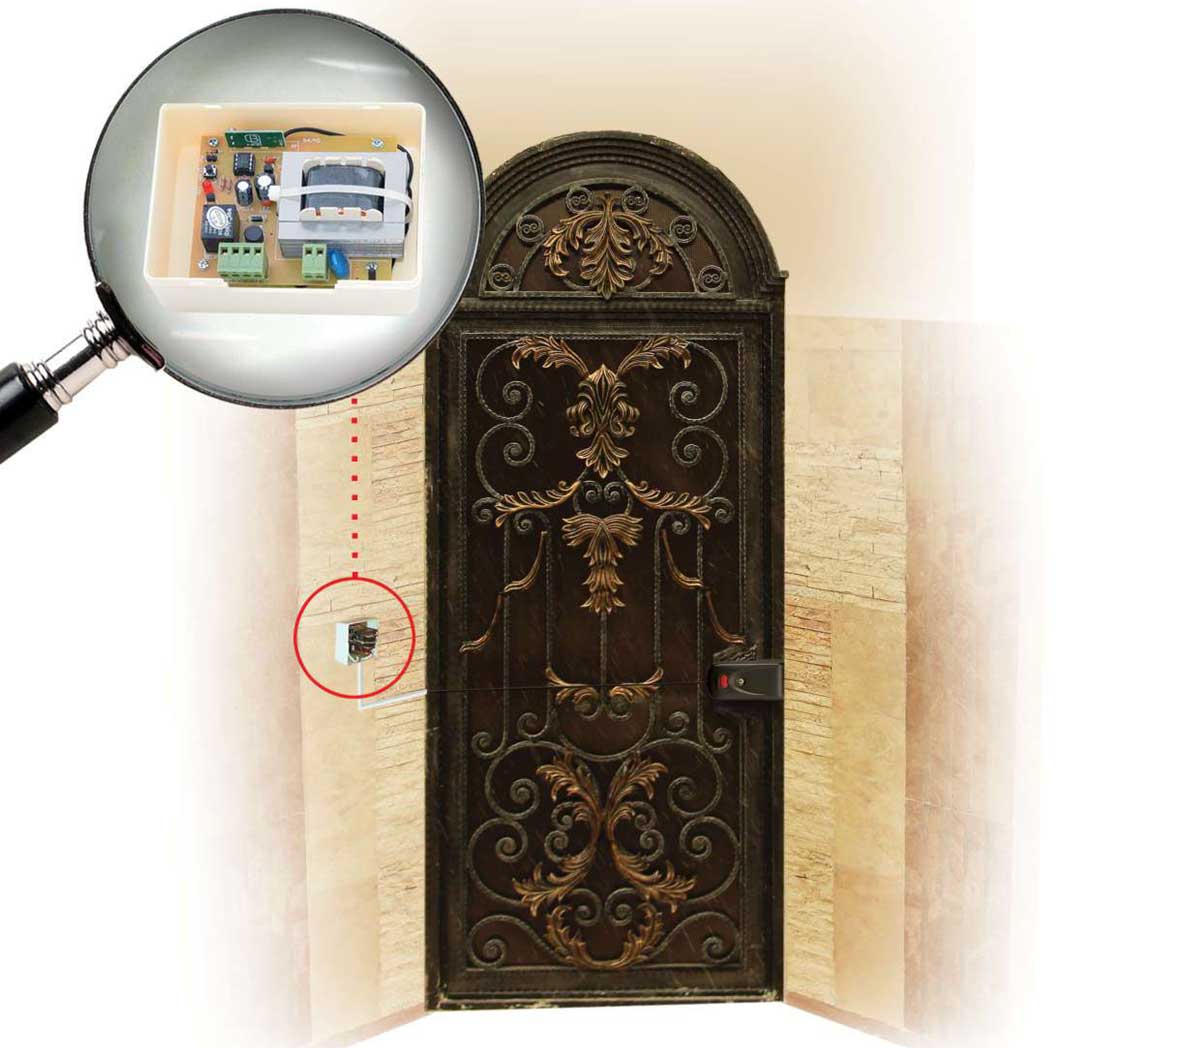 رسیور قفل برقی بتا نصب شده روی درب